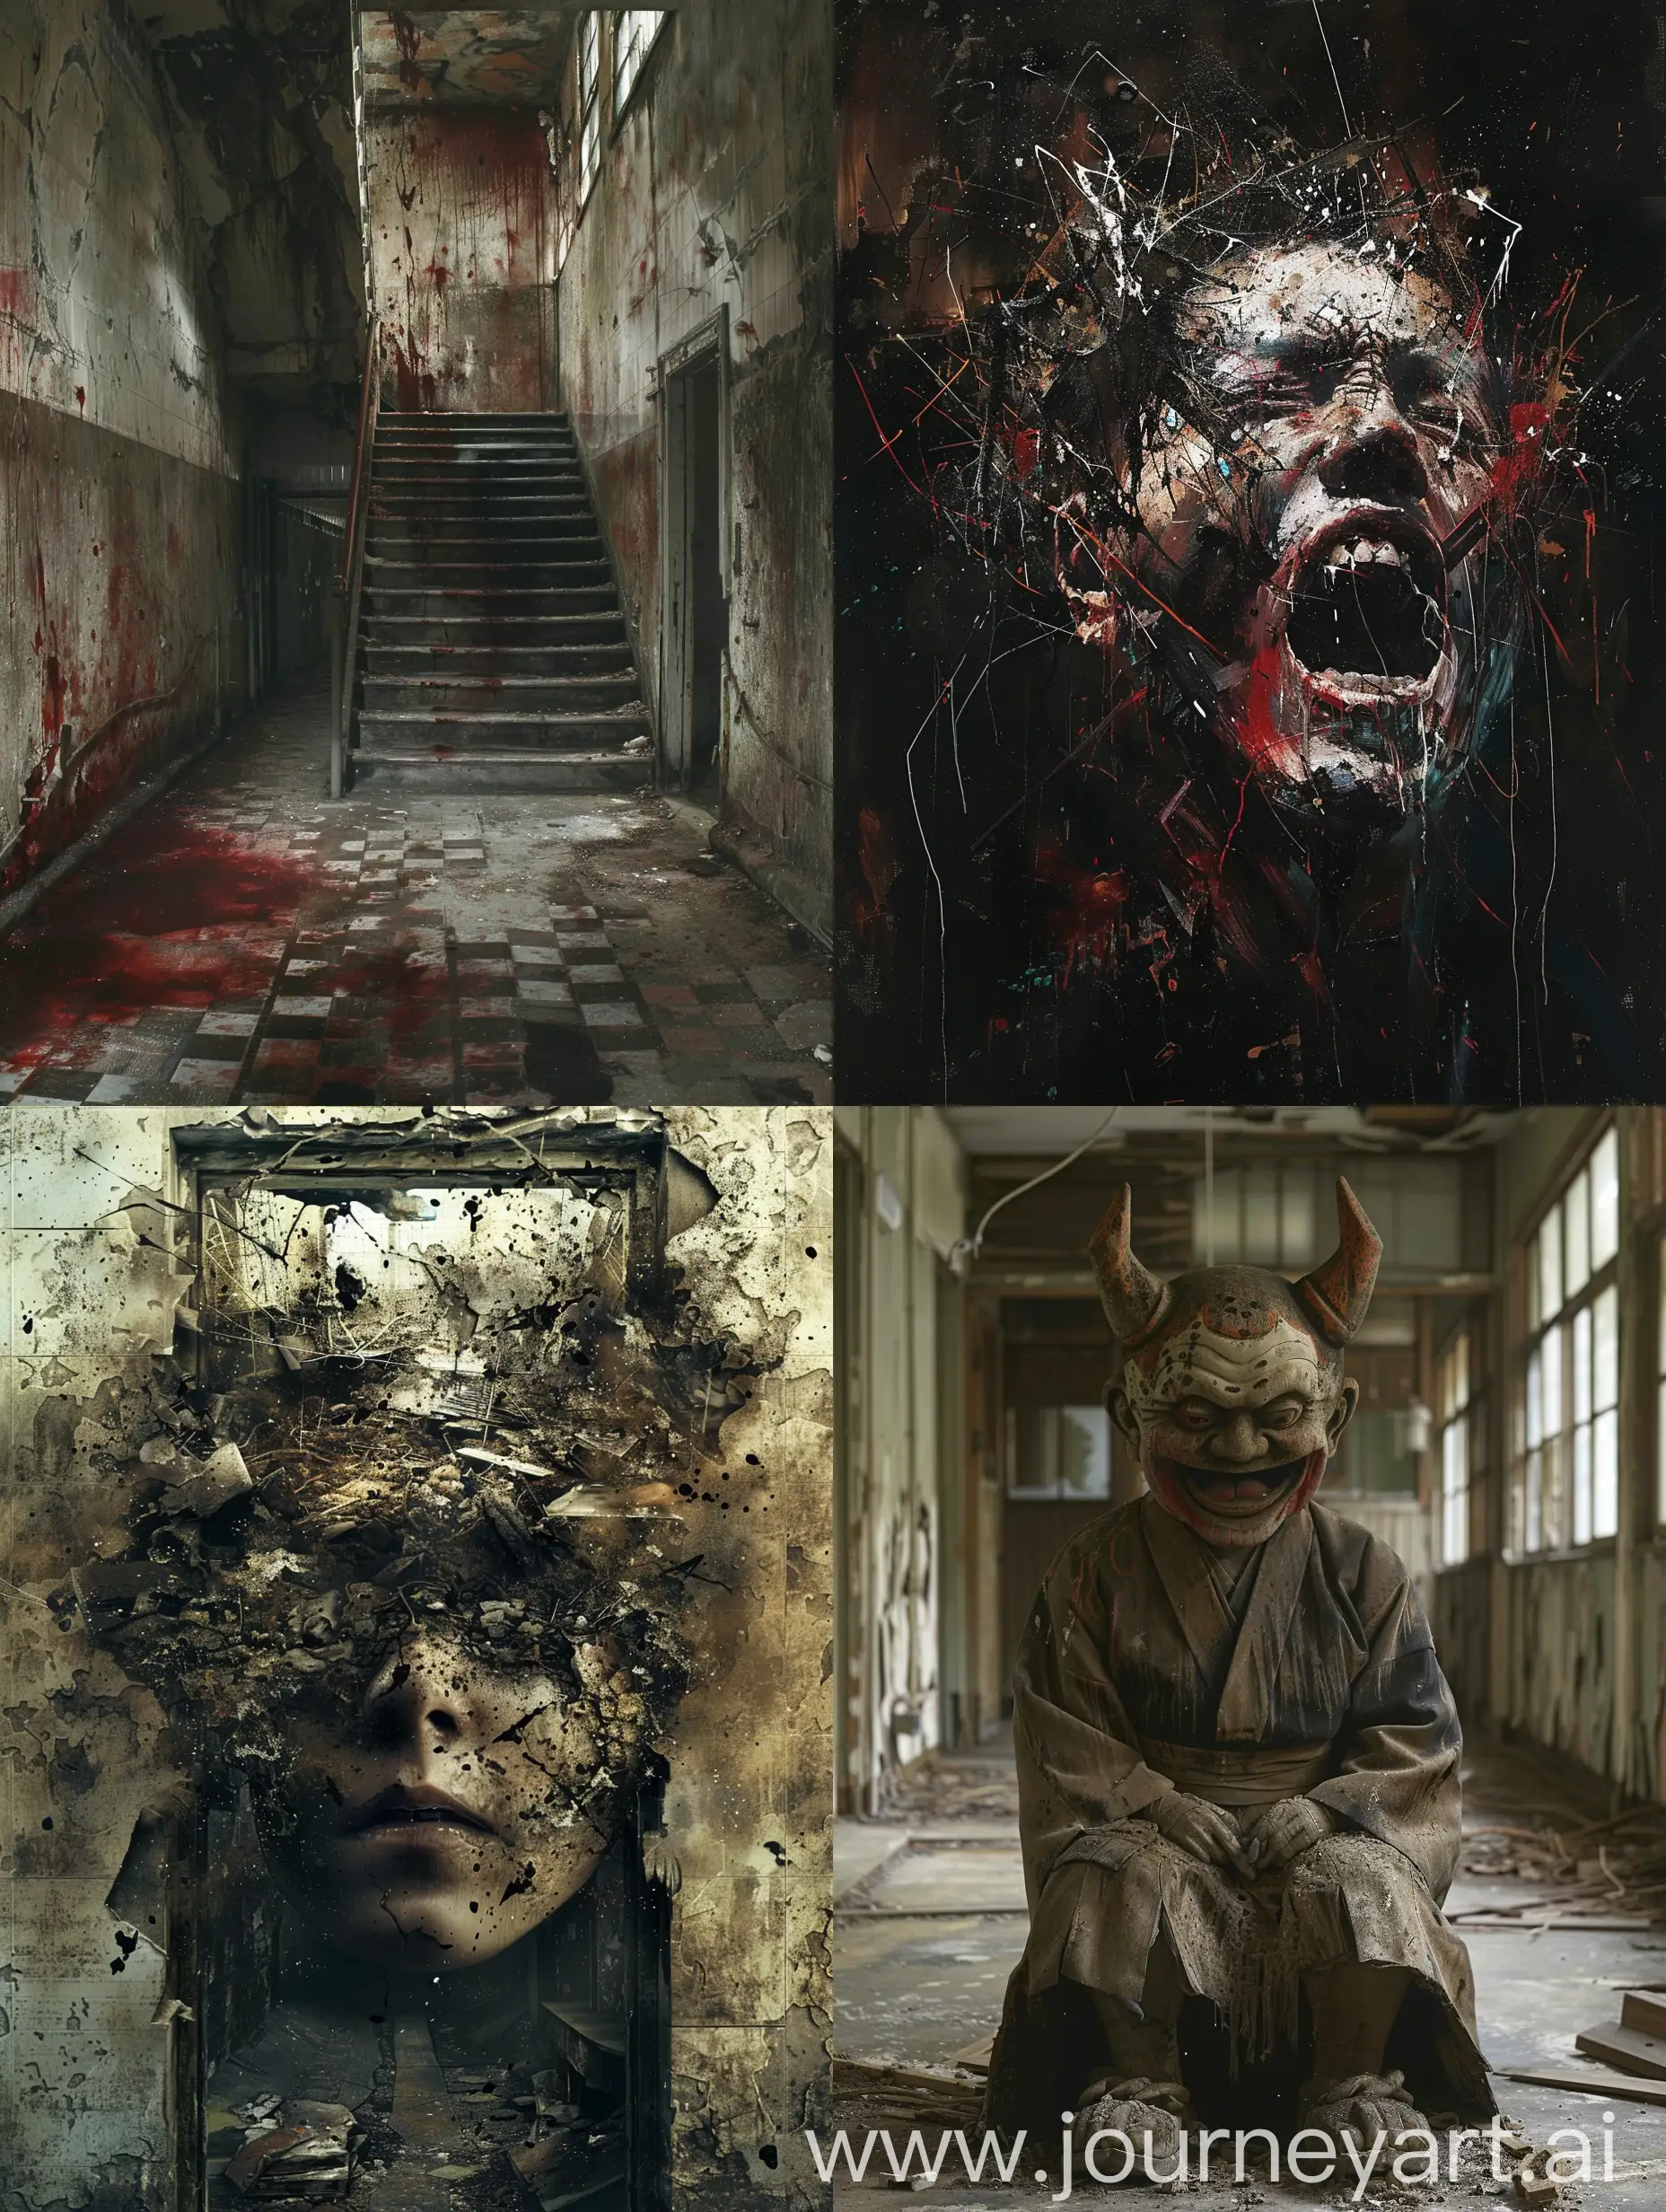 The Schizophrenic Artist, unraveling sanity, Abandoned Asylum, Takashi Miike's Shocking and Twisted Imagery, psychological warfare, psychological horror